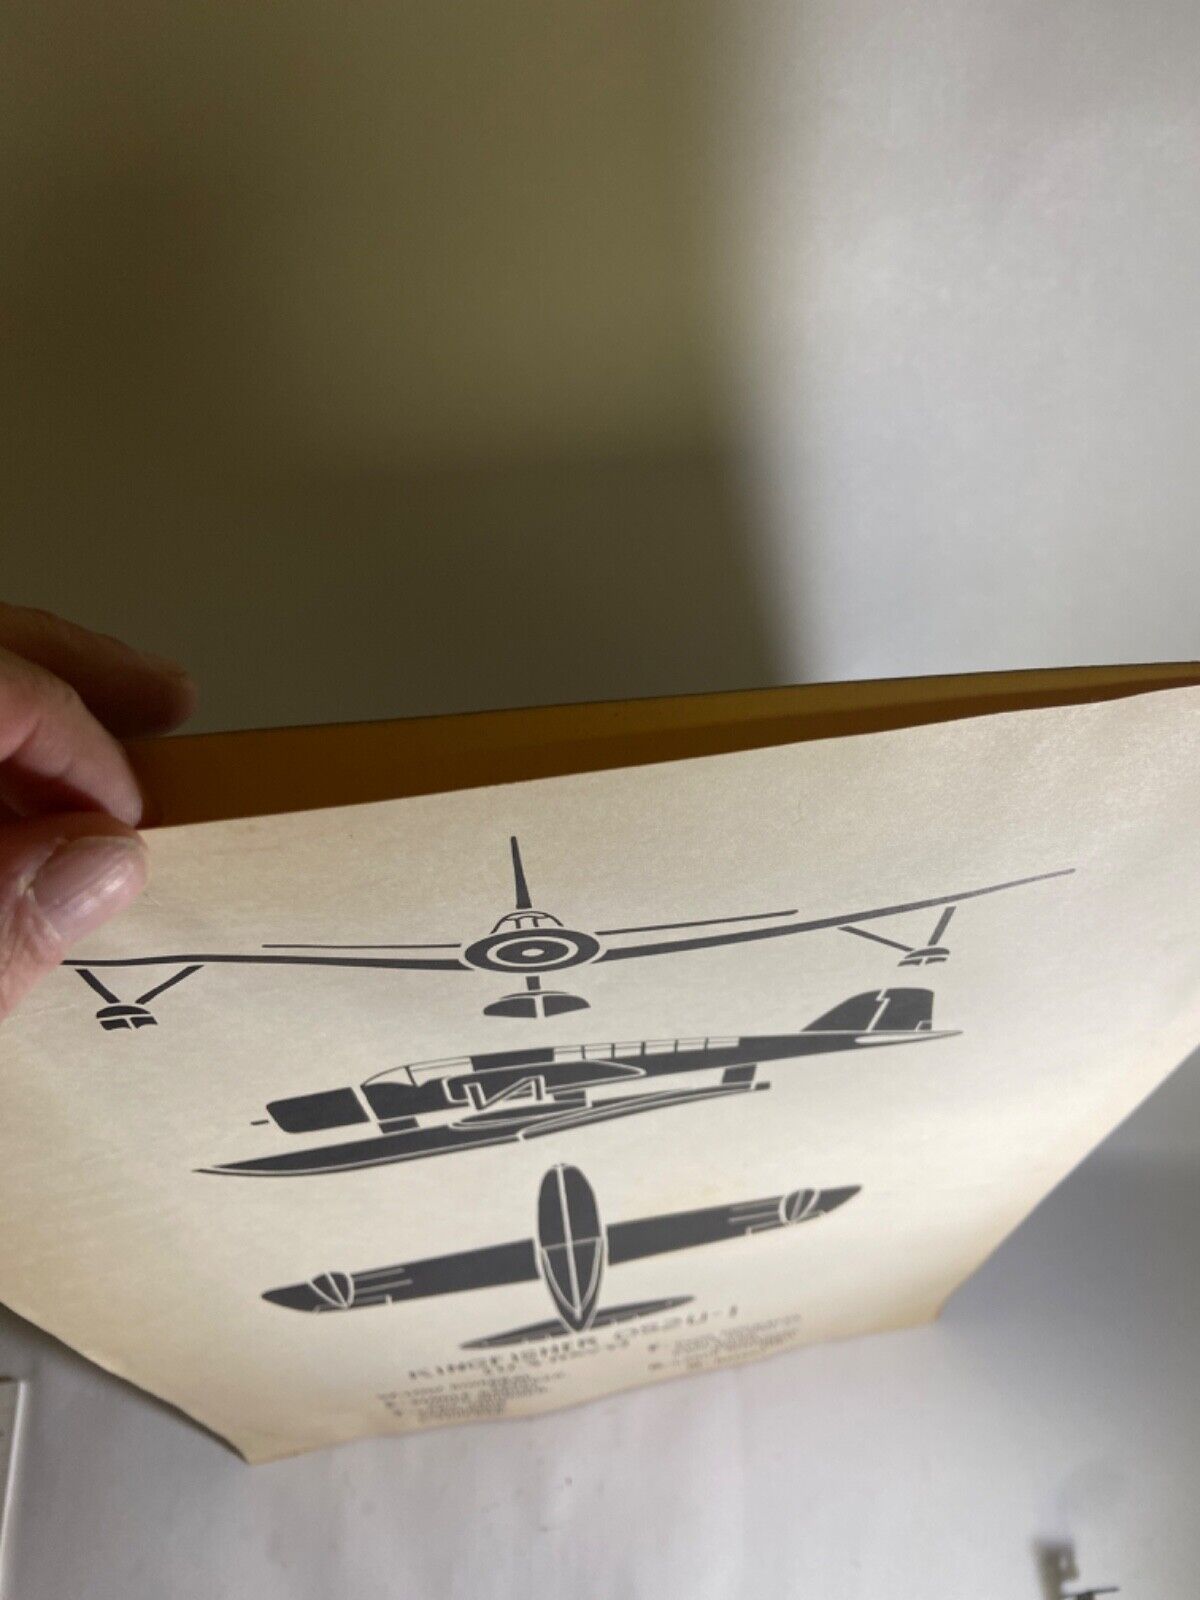 Vintage WWII Vought OS2U Kingfisher Observation Floatplane Recognition Poster Без бренда - фотография #8